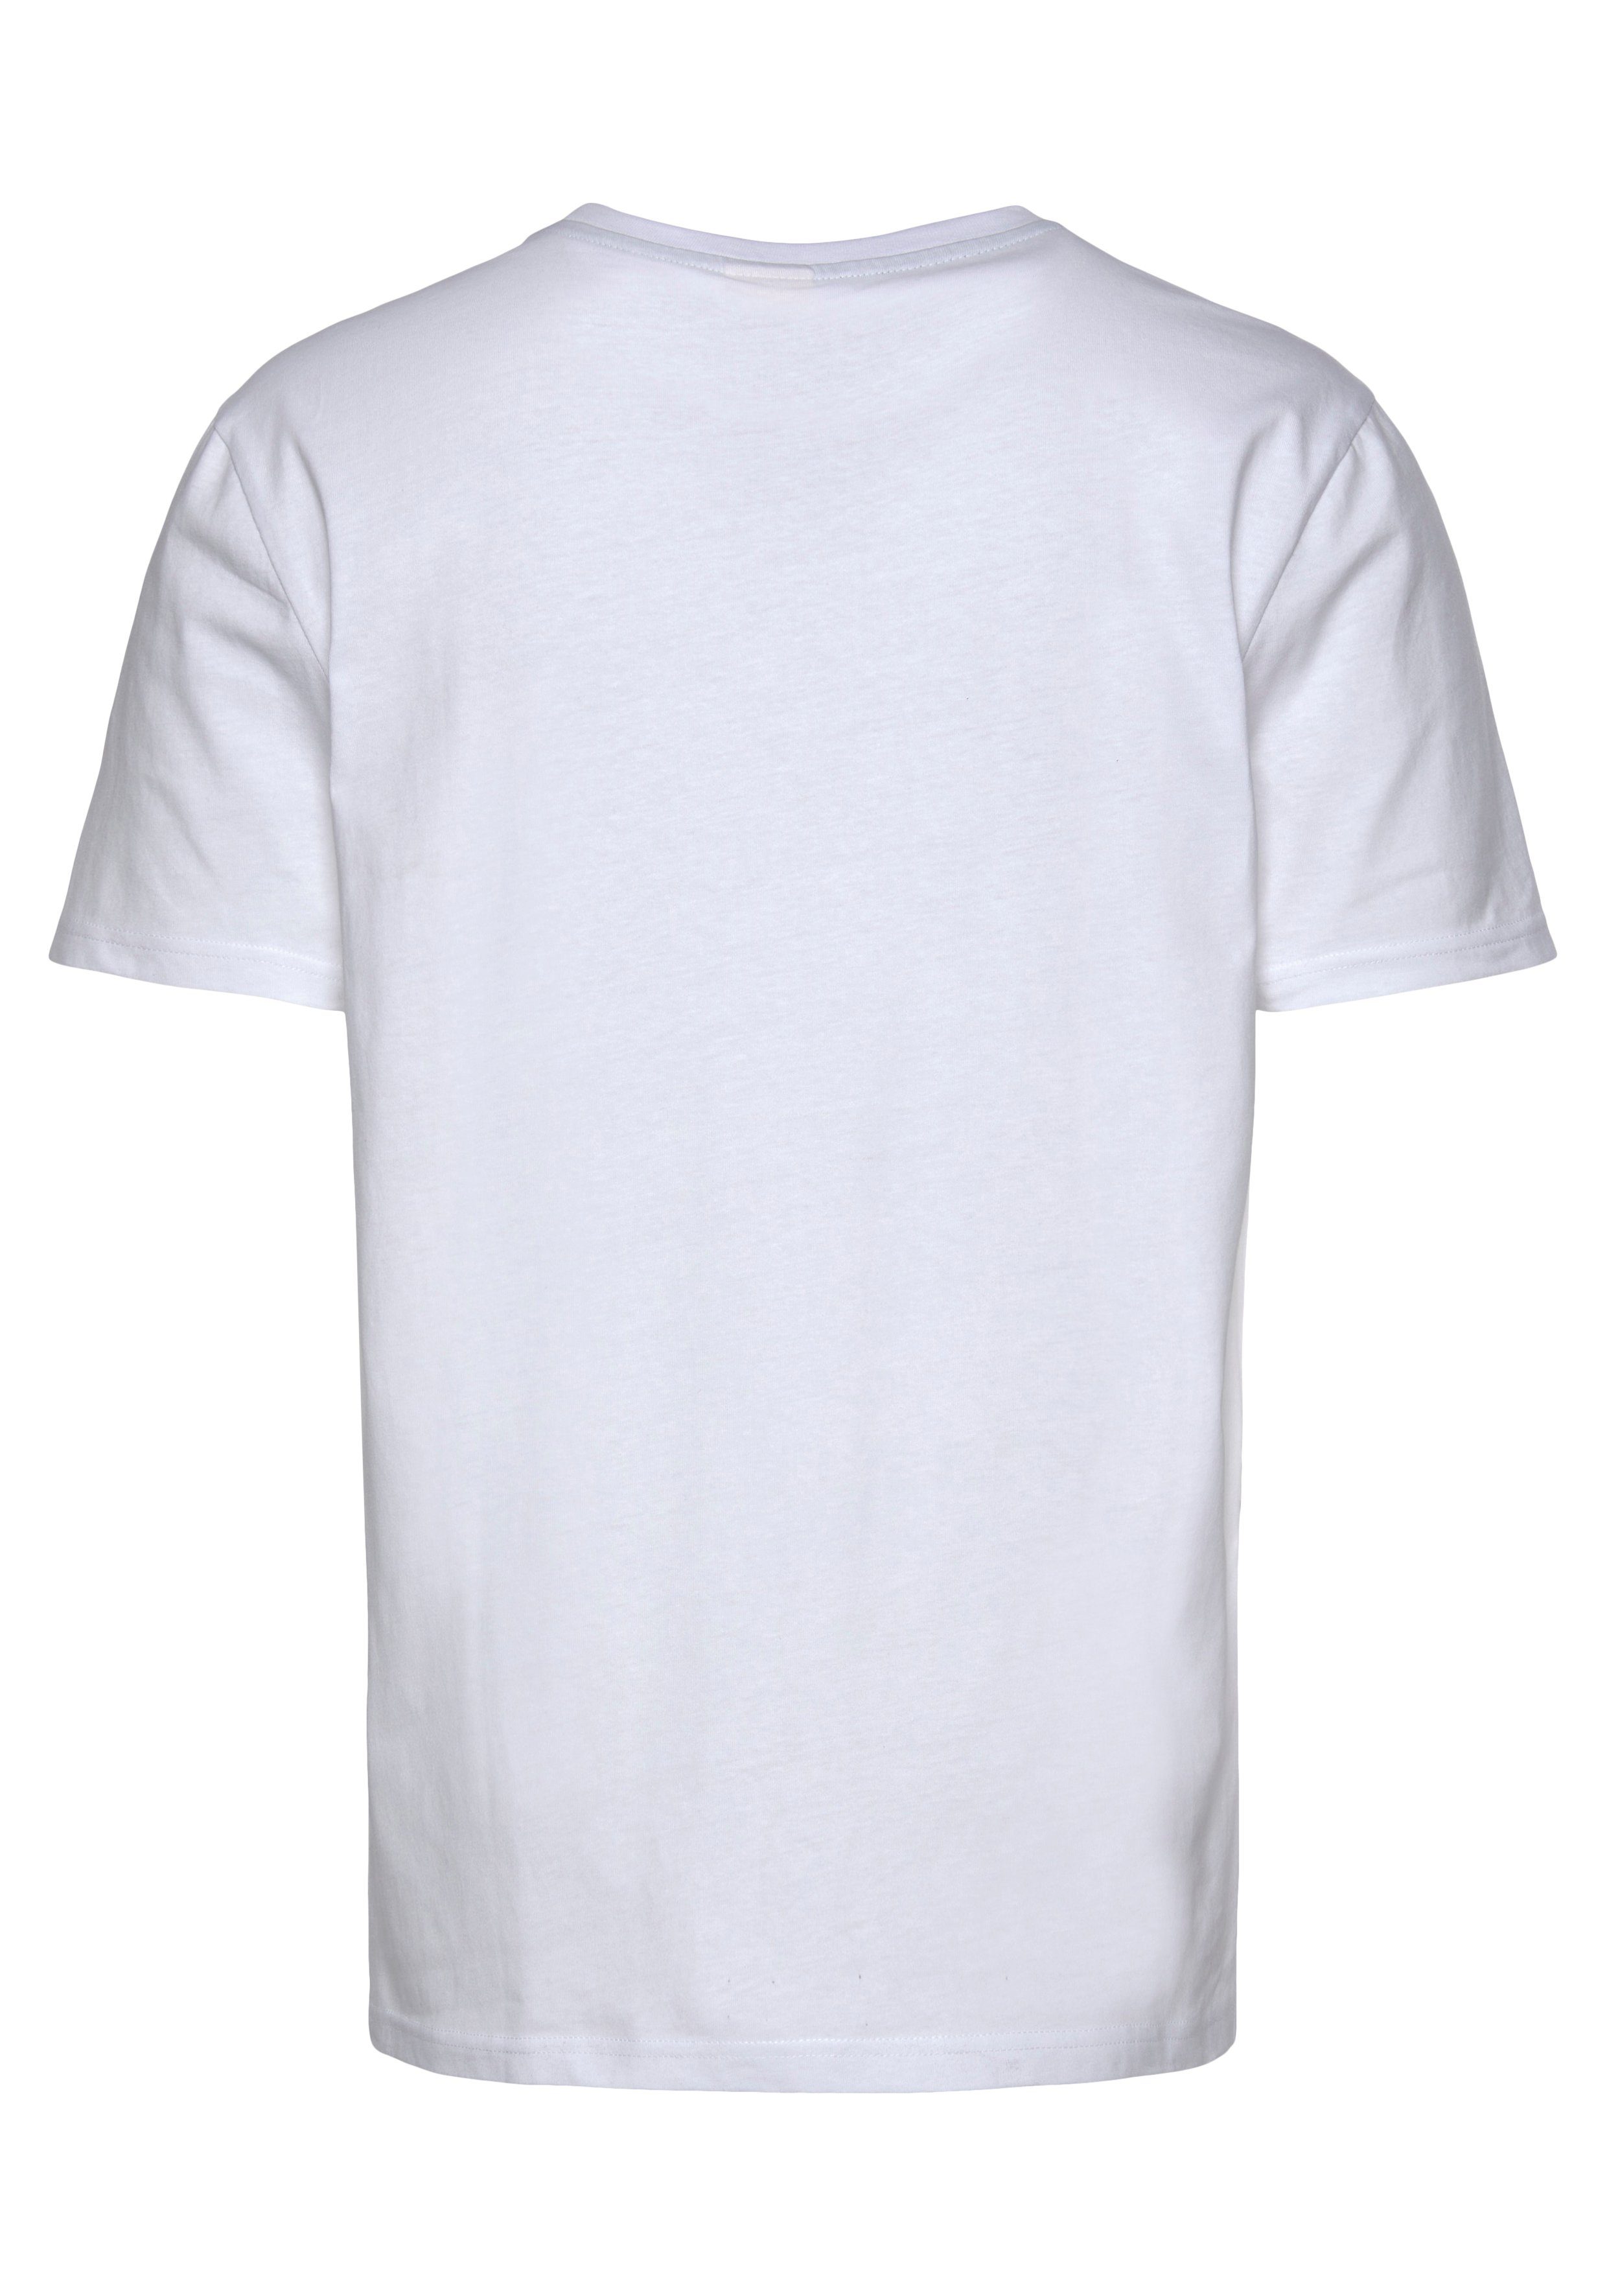 Ocean Sportswear weiß T-Shirt